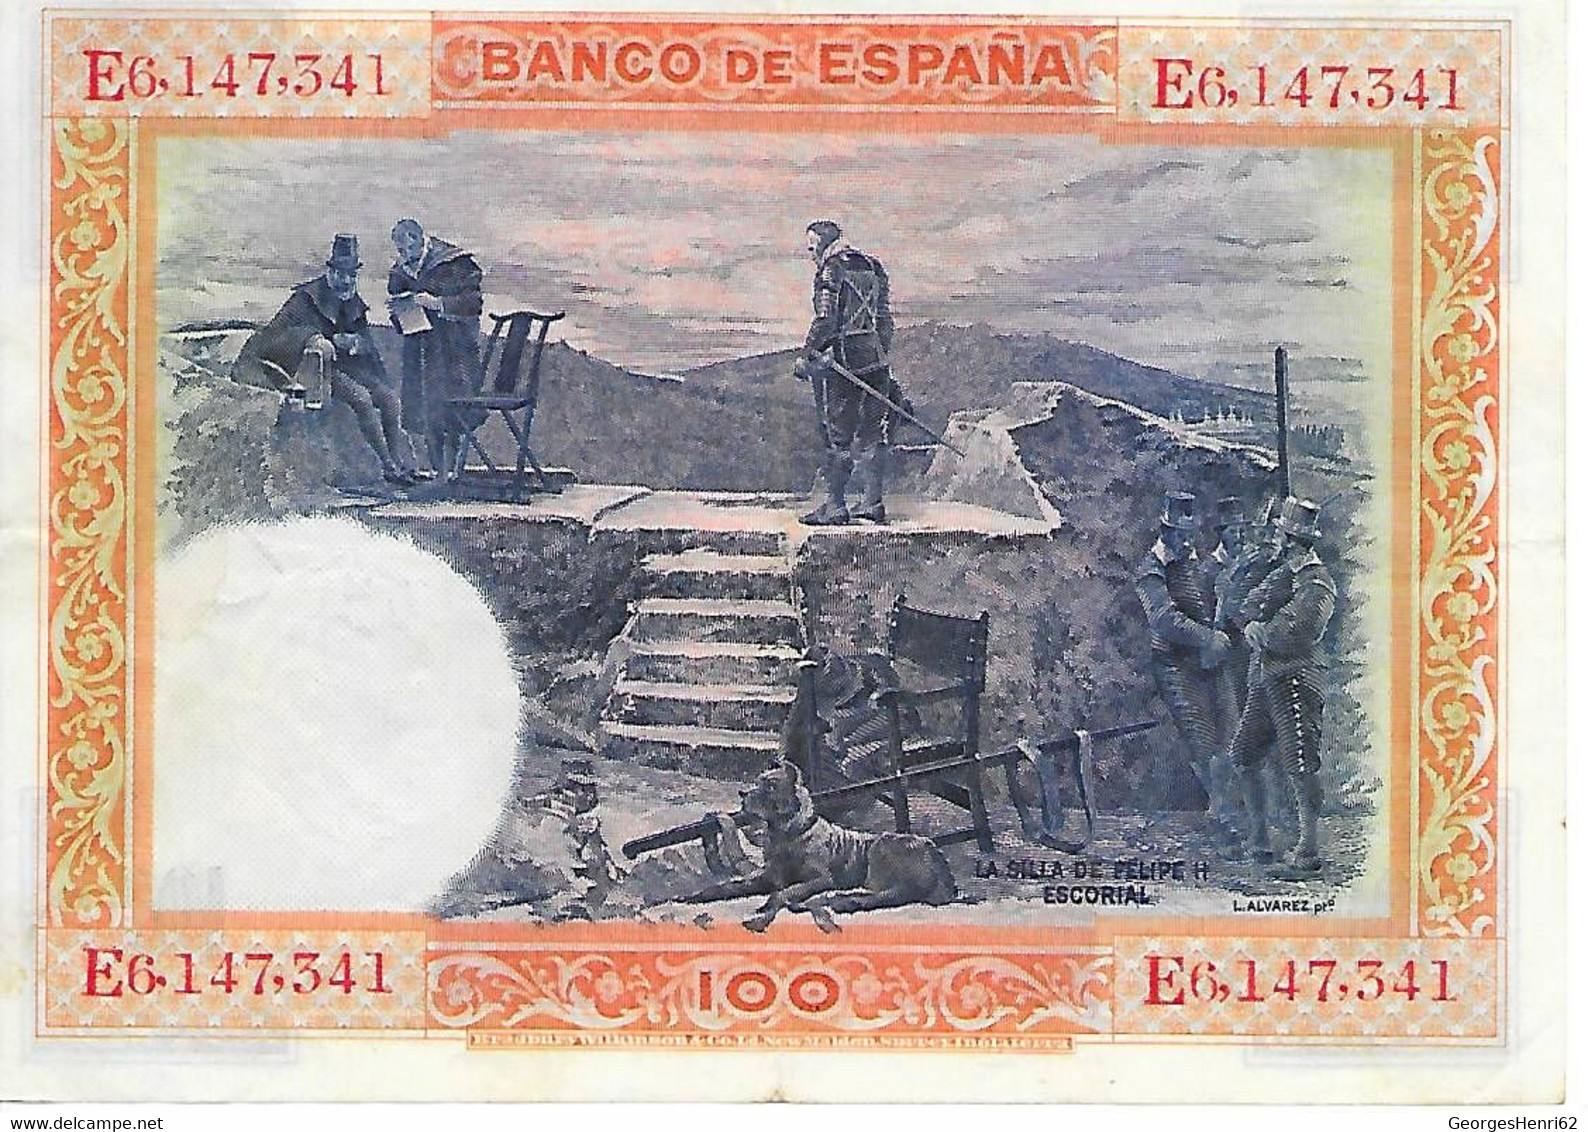 Espagne - 100 Pesetas - 1/7/1925 - (69a) - 100 Pesetas